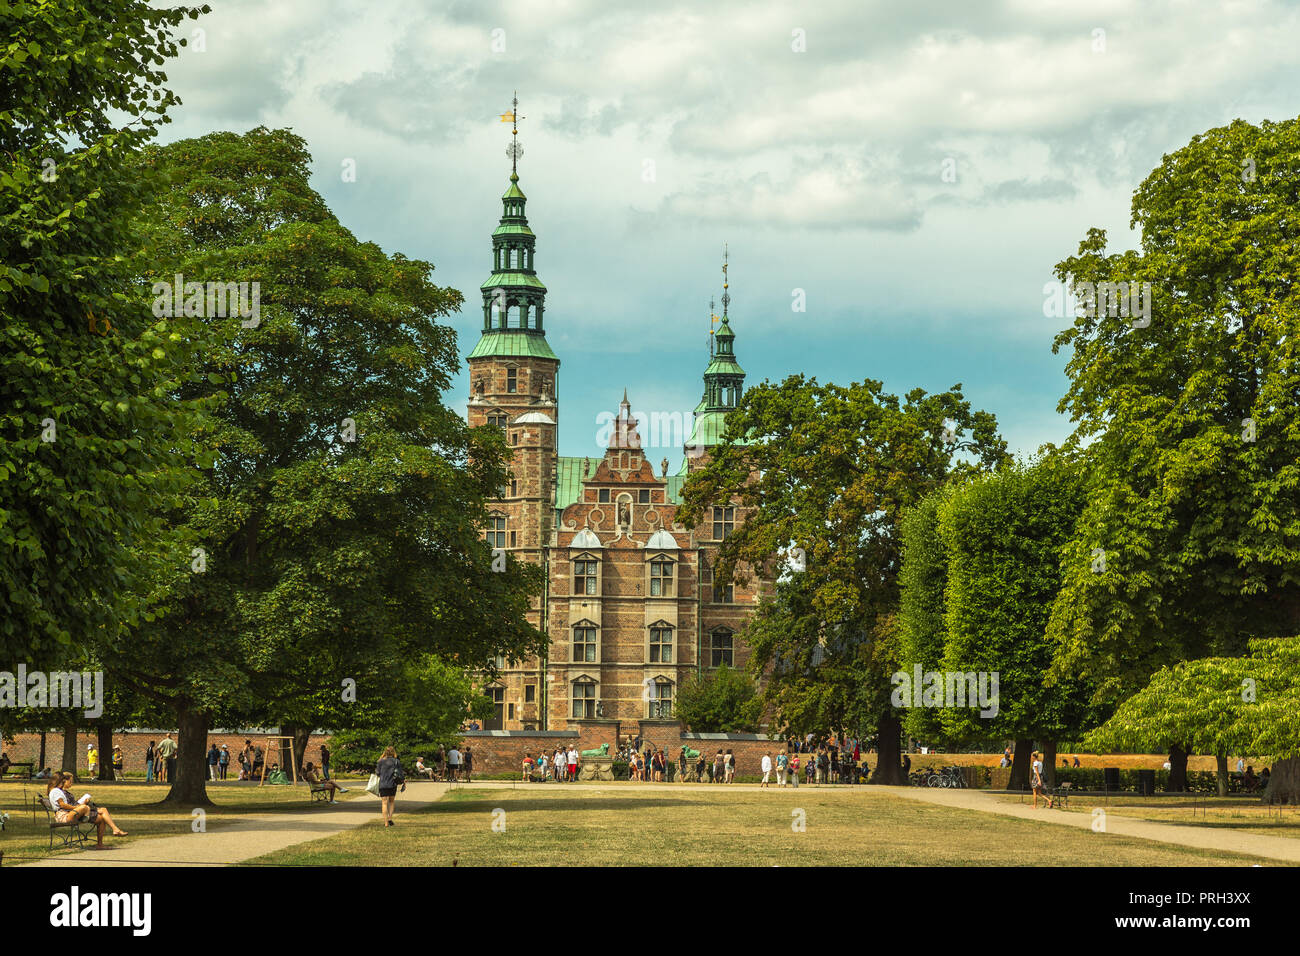 Rosenborg Castle in Copenhagen Stock Photo